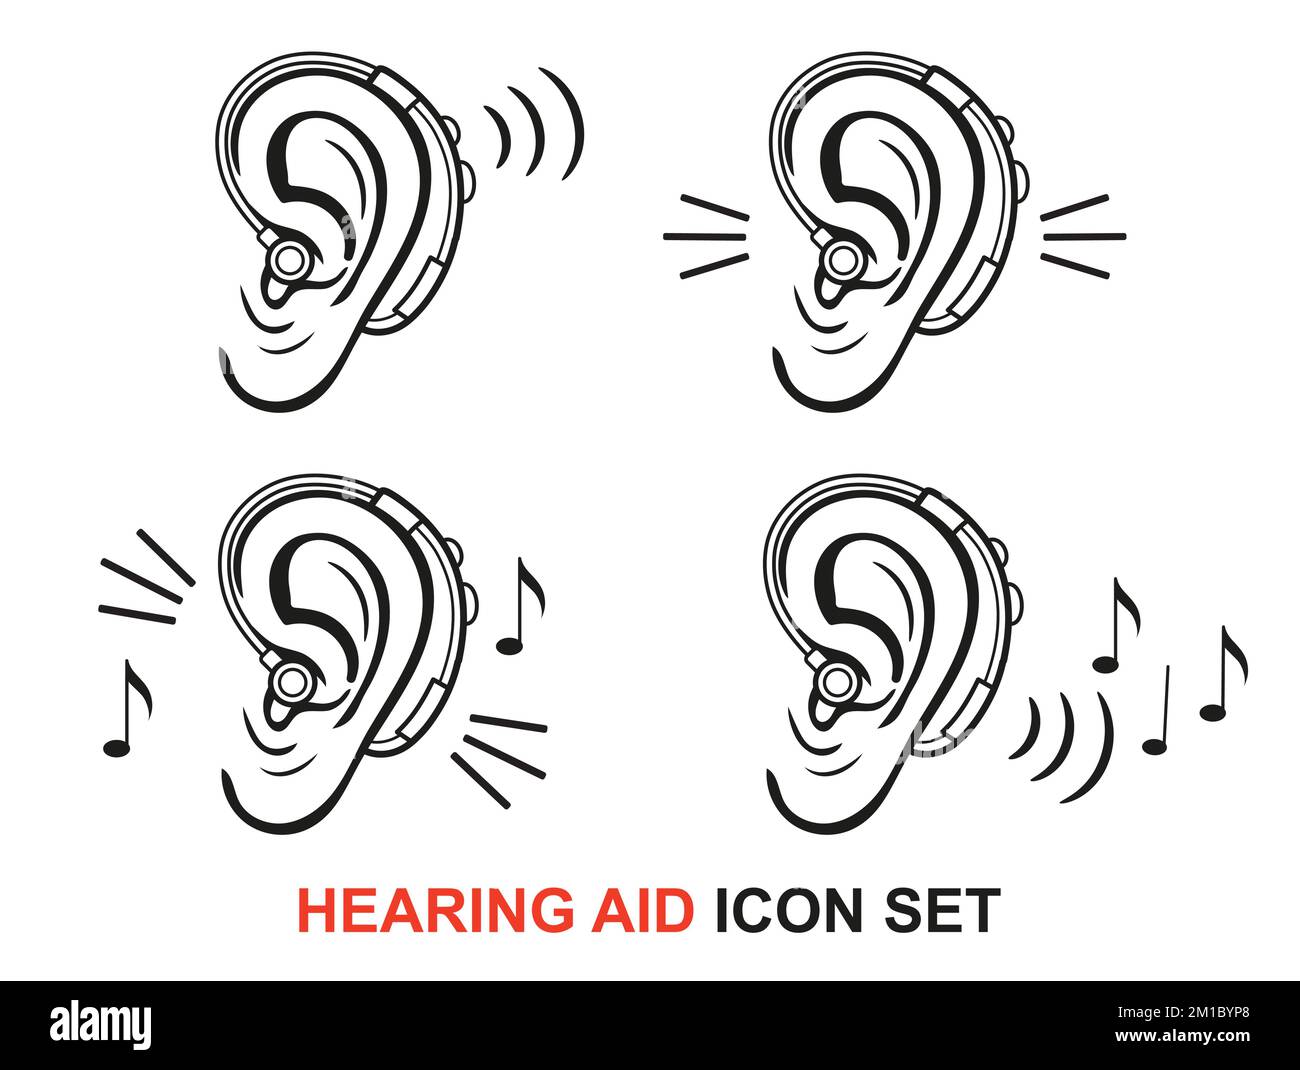 Hörgerät für Gehörlose, Hörverlust, medizinisches Hörgerät, Gehörlosenliniensatz. Menschliche Tonwahrnehmung. Hören Sie zu. Vektor Stock Vektor